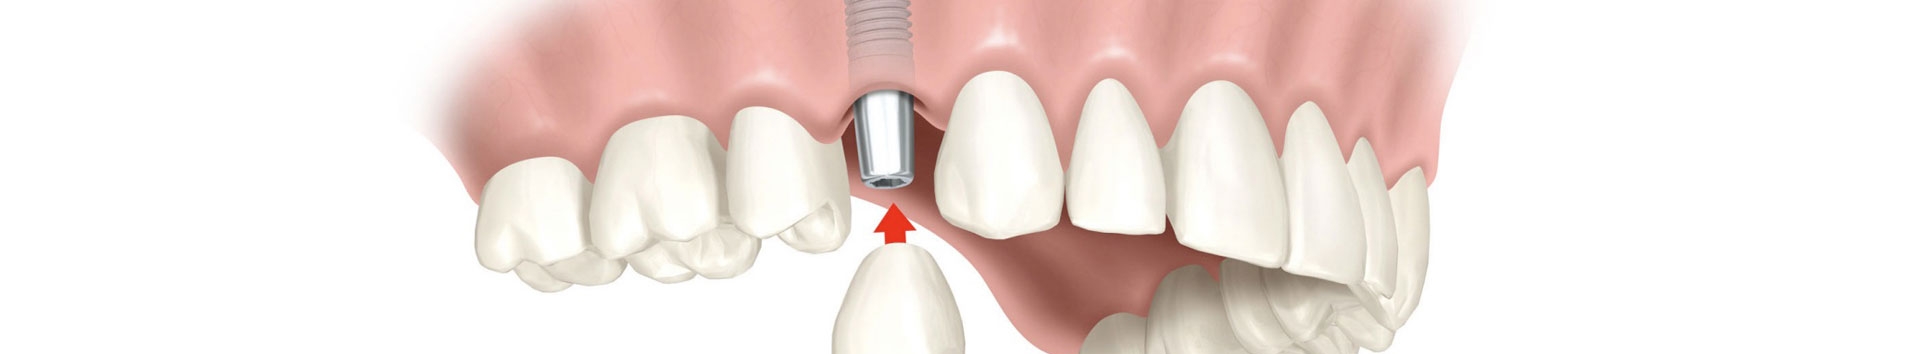 Implante dentário: Invista com segurança e ganhe um novo sorriso